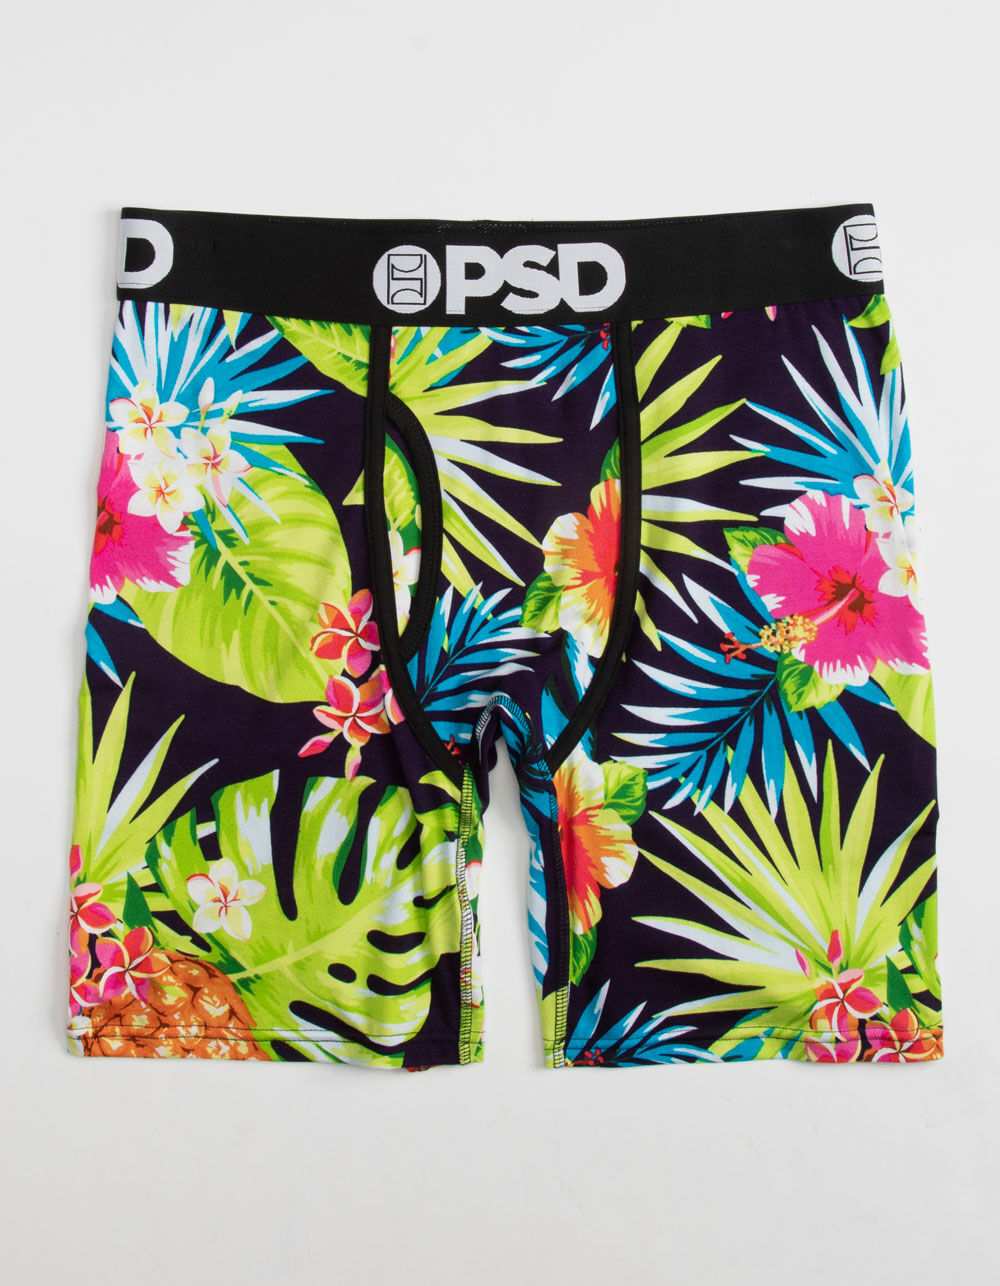  PSD Men's Floral Modal 3-Pack Boxer Briefs, Multi, M